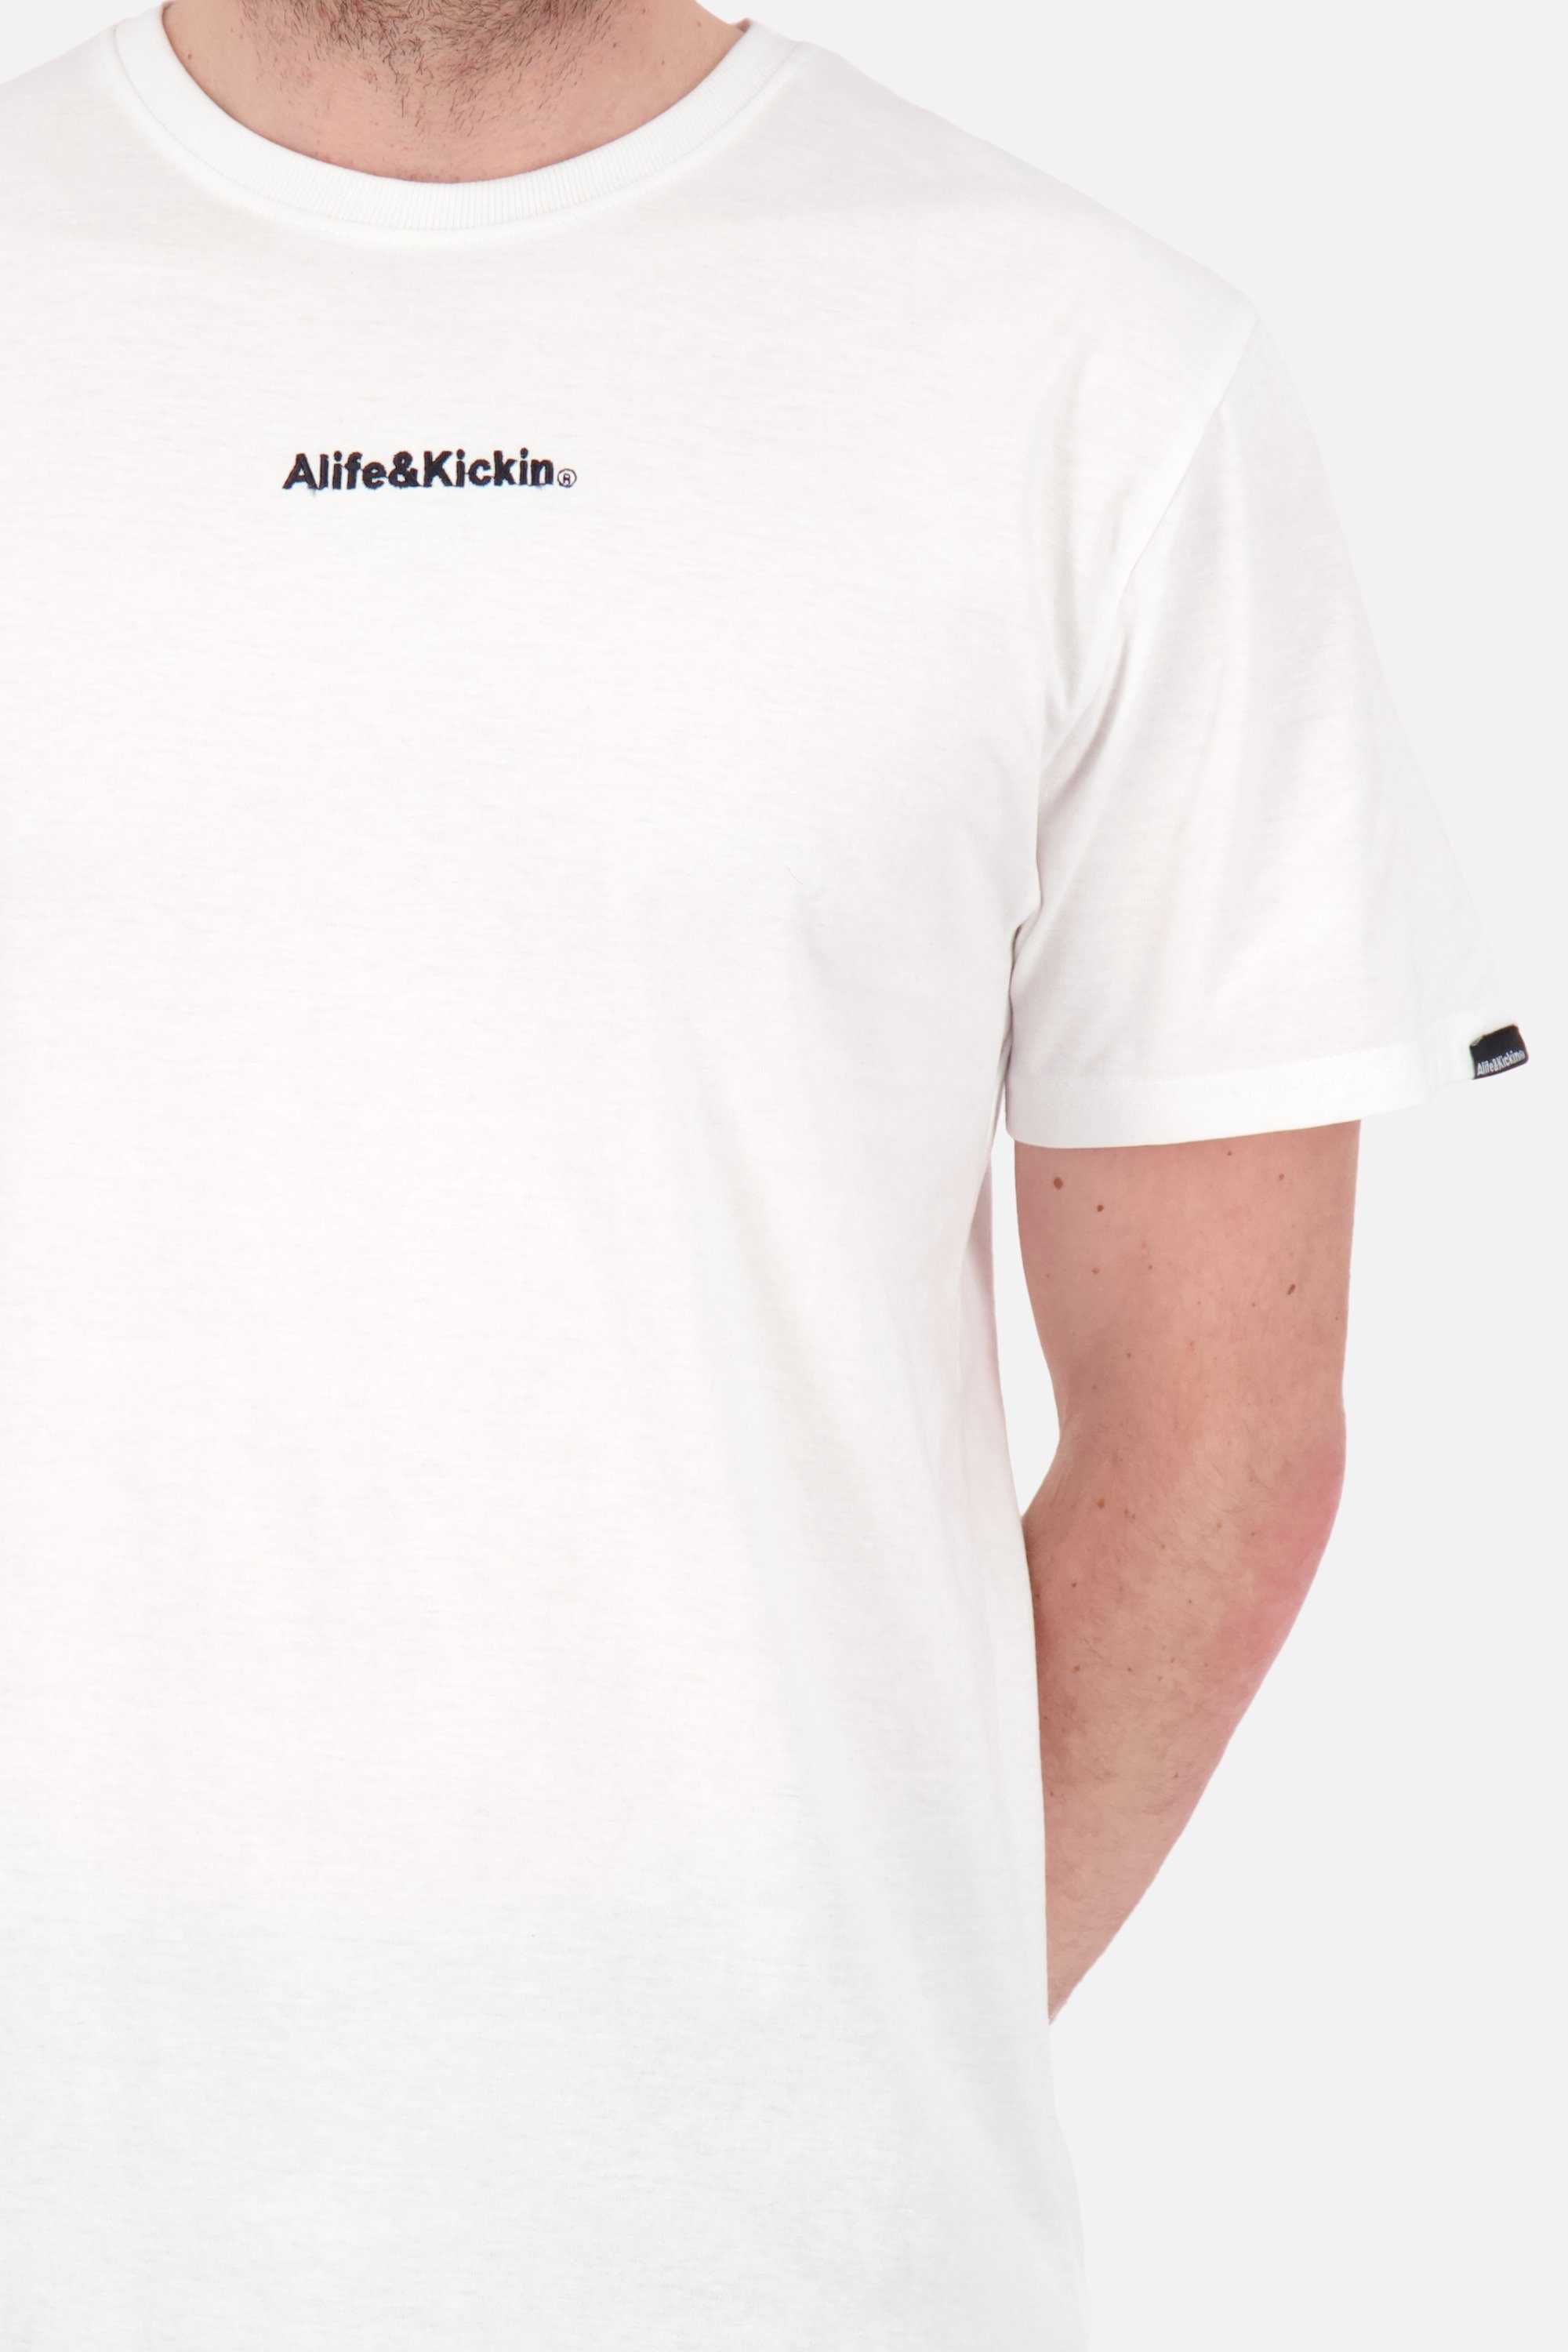 Herren white Alife Shirt & Kurzarmshirt, Shirt AlfieAK Kickin Rundhalsshirt E